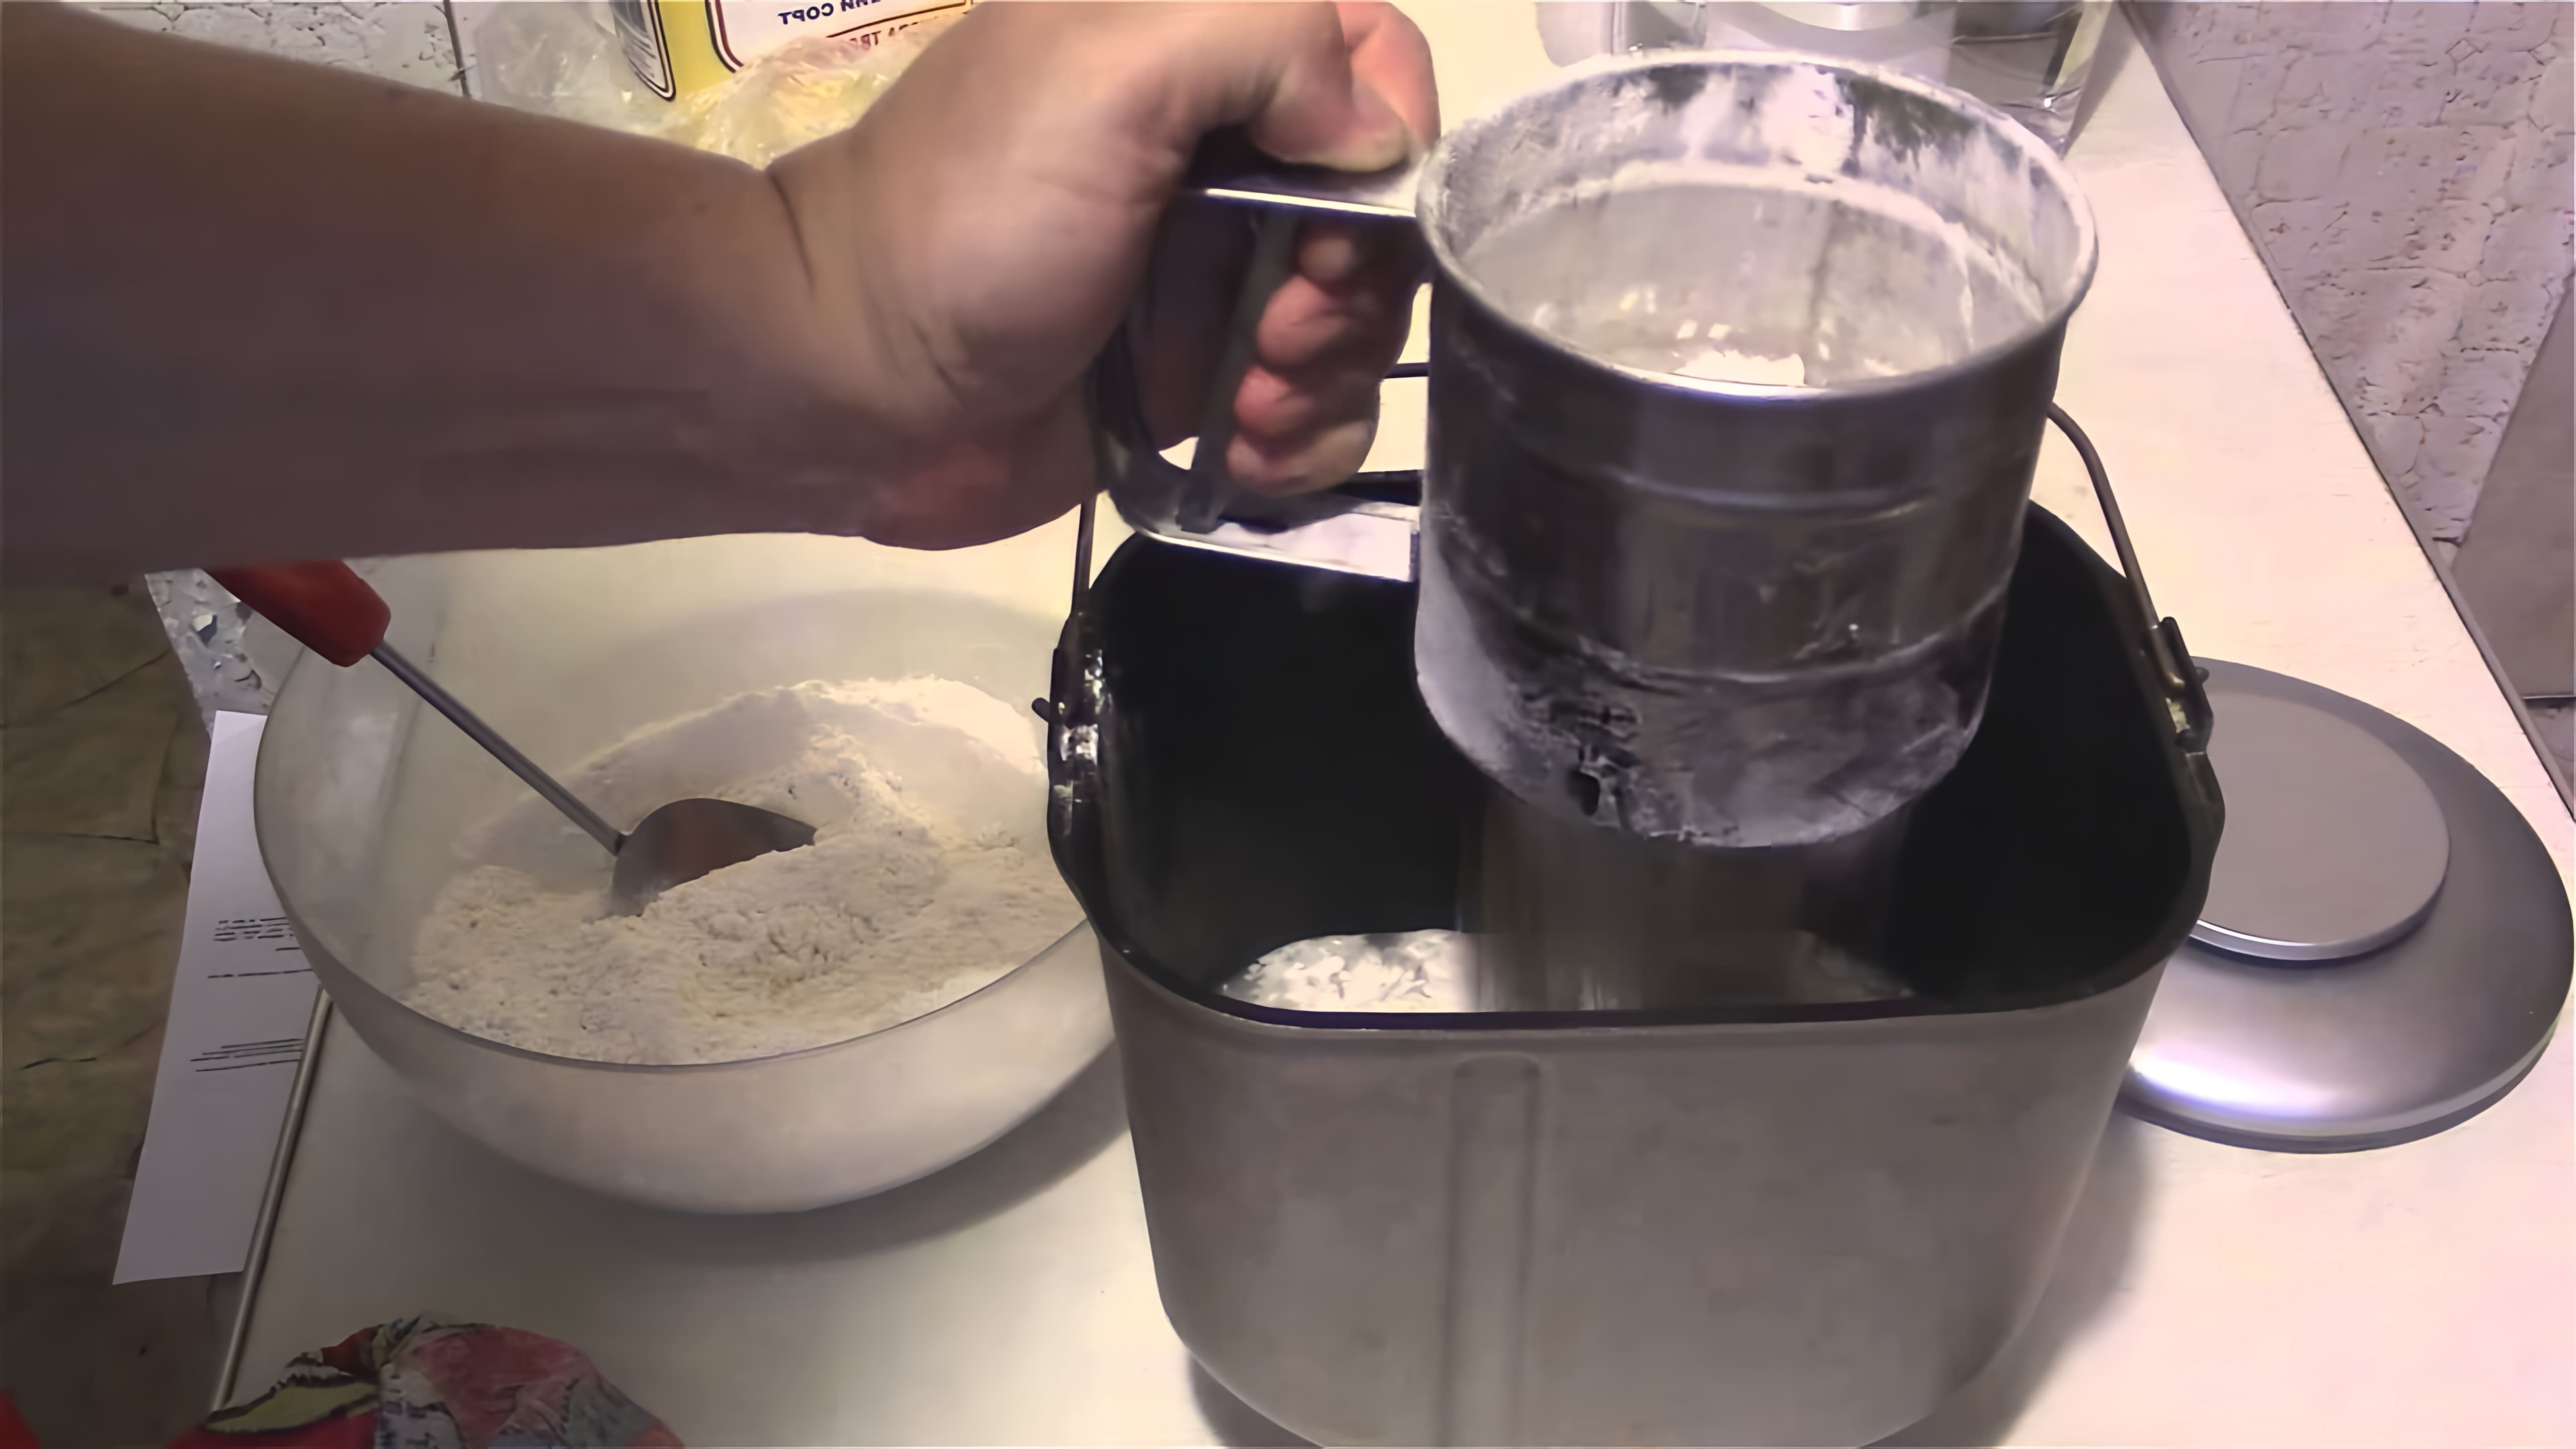 Видео демонстрирует рецепт домашнего хлеба, приготовленного с использованием свежих дрожжей в хлебопечке